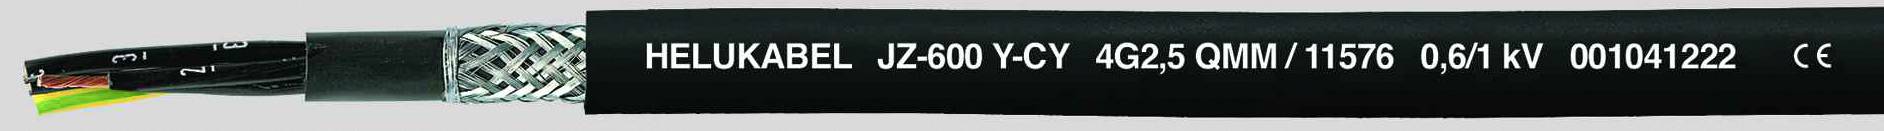 HELUKABEL JZ-600-Y-CY Steuerleitung 5 G 1 mm² Schwarz 11519-1000 1000 m